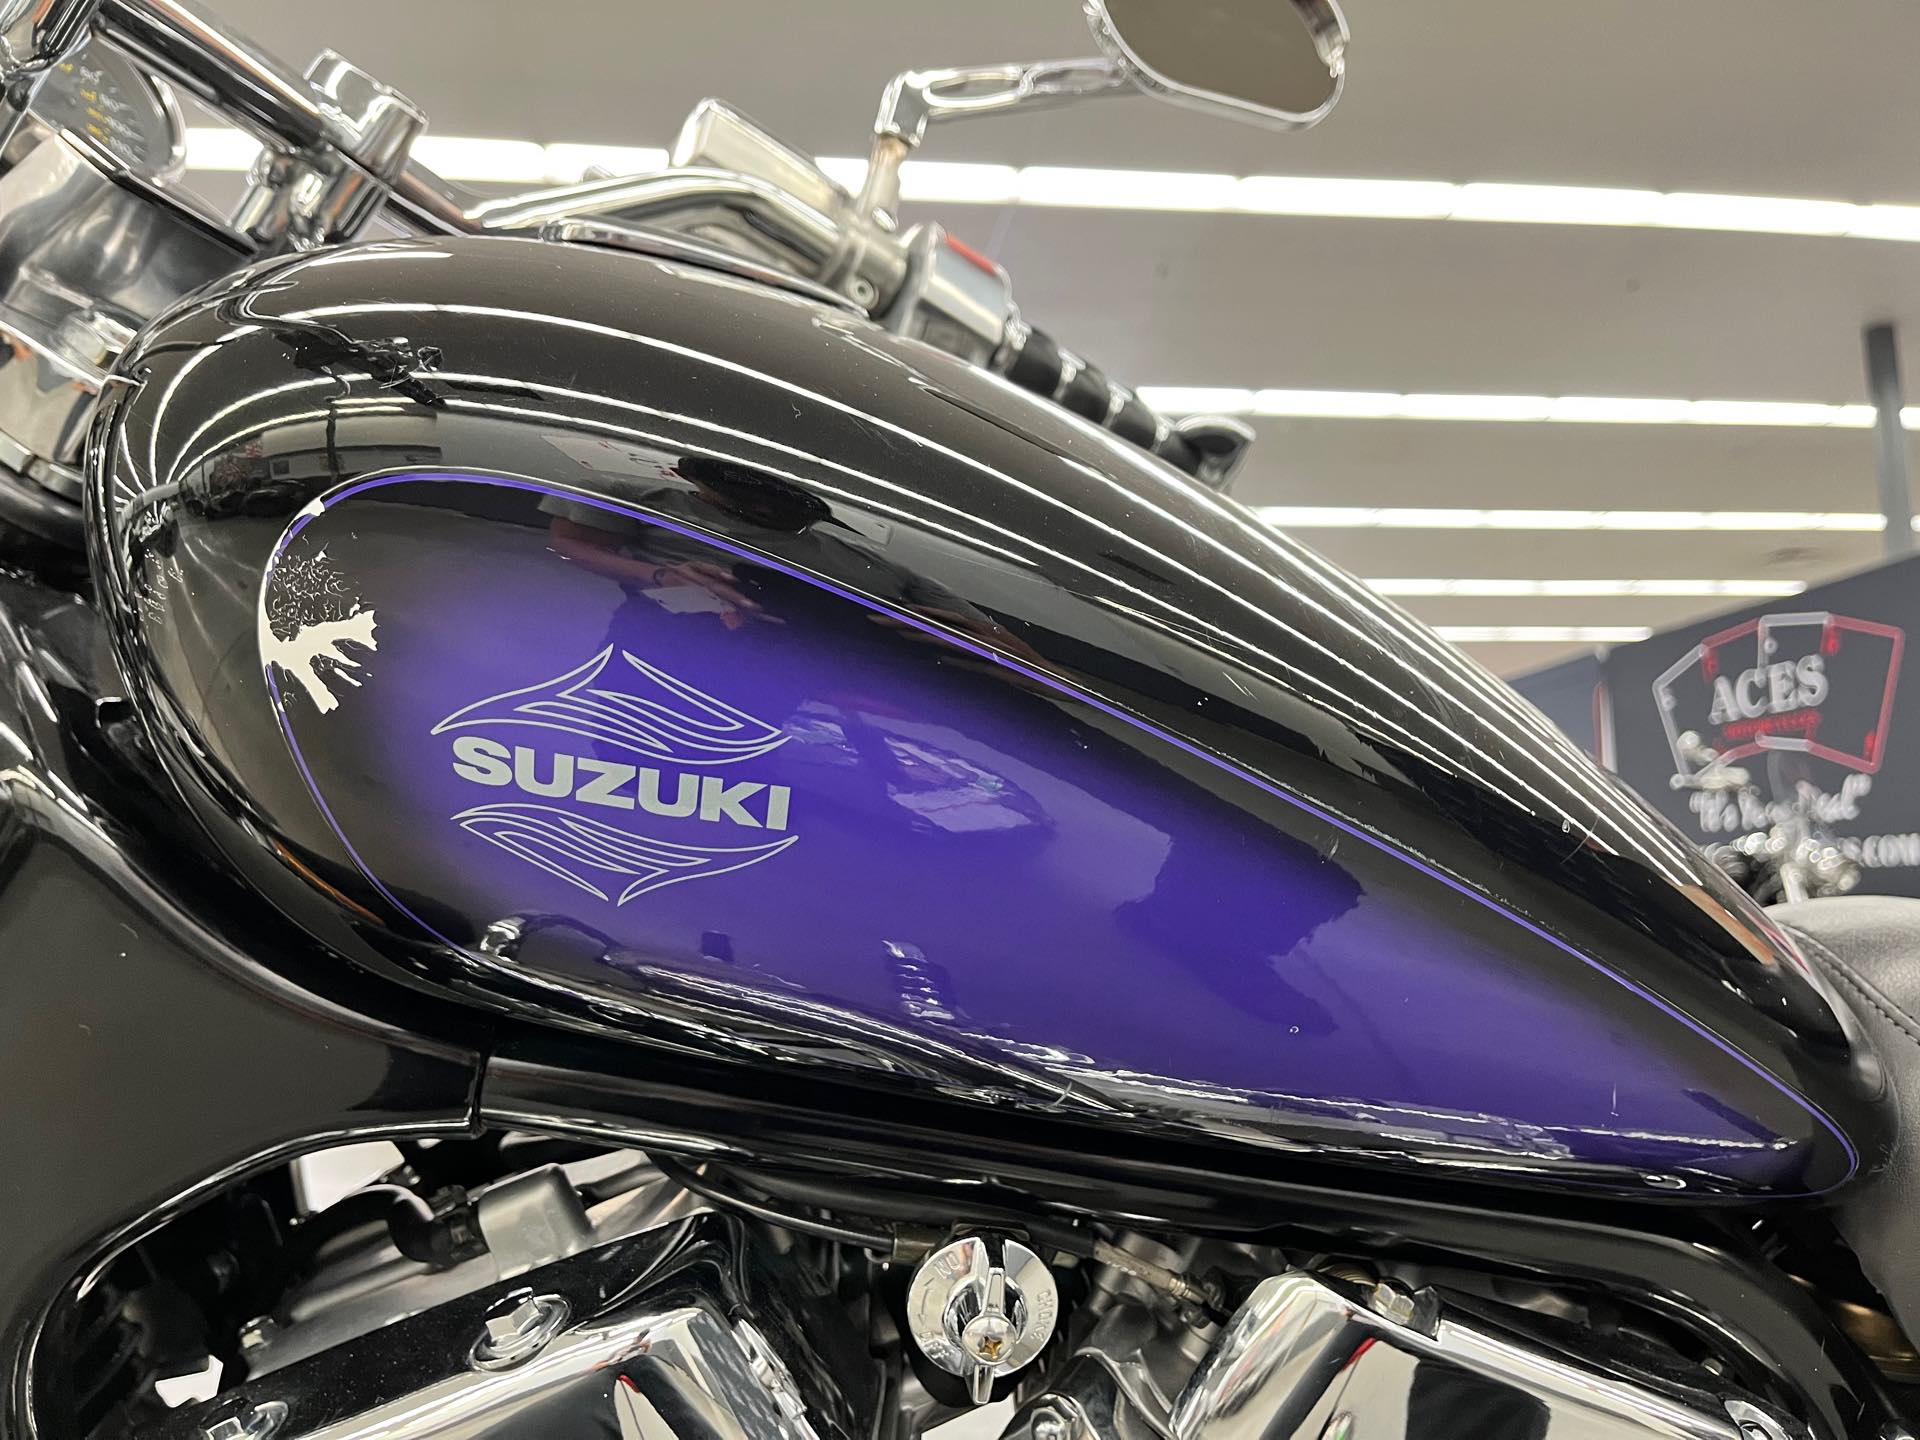 1992 SUZUKI VS1400 at Aces Motorcycles - Denver